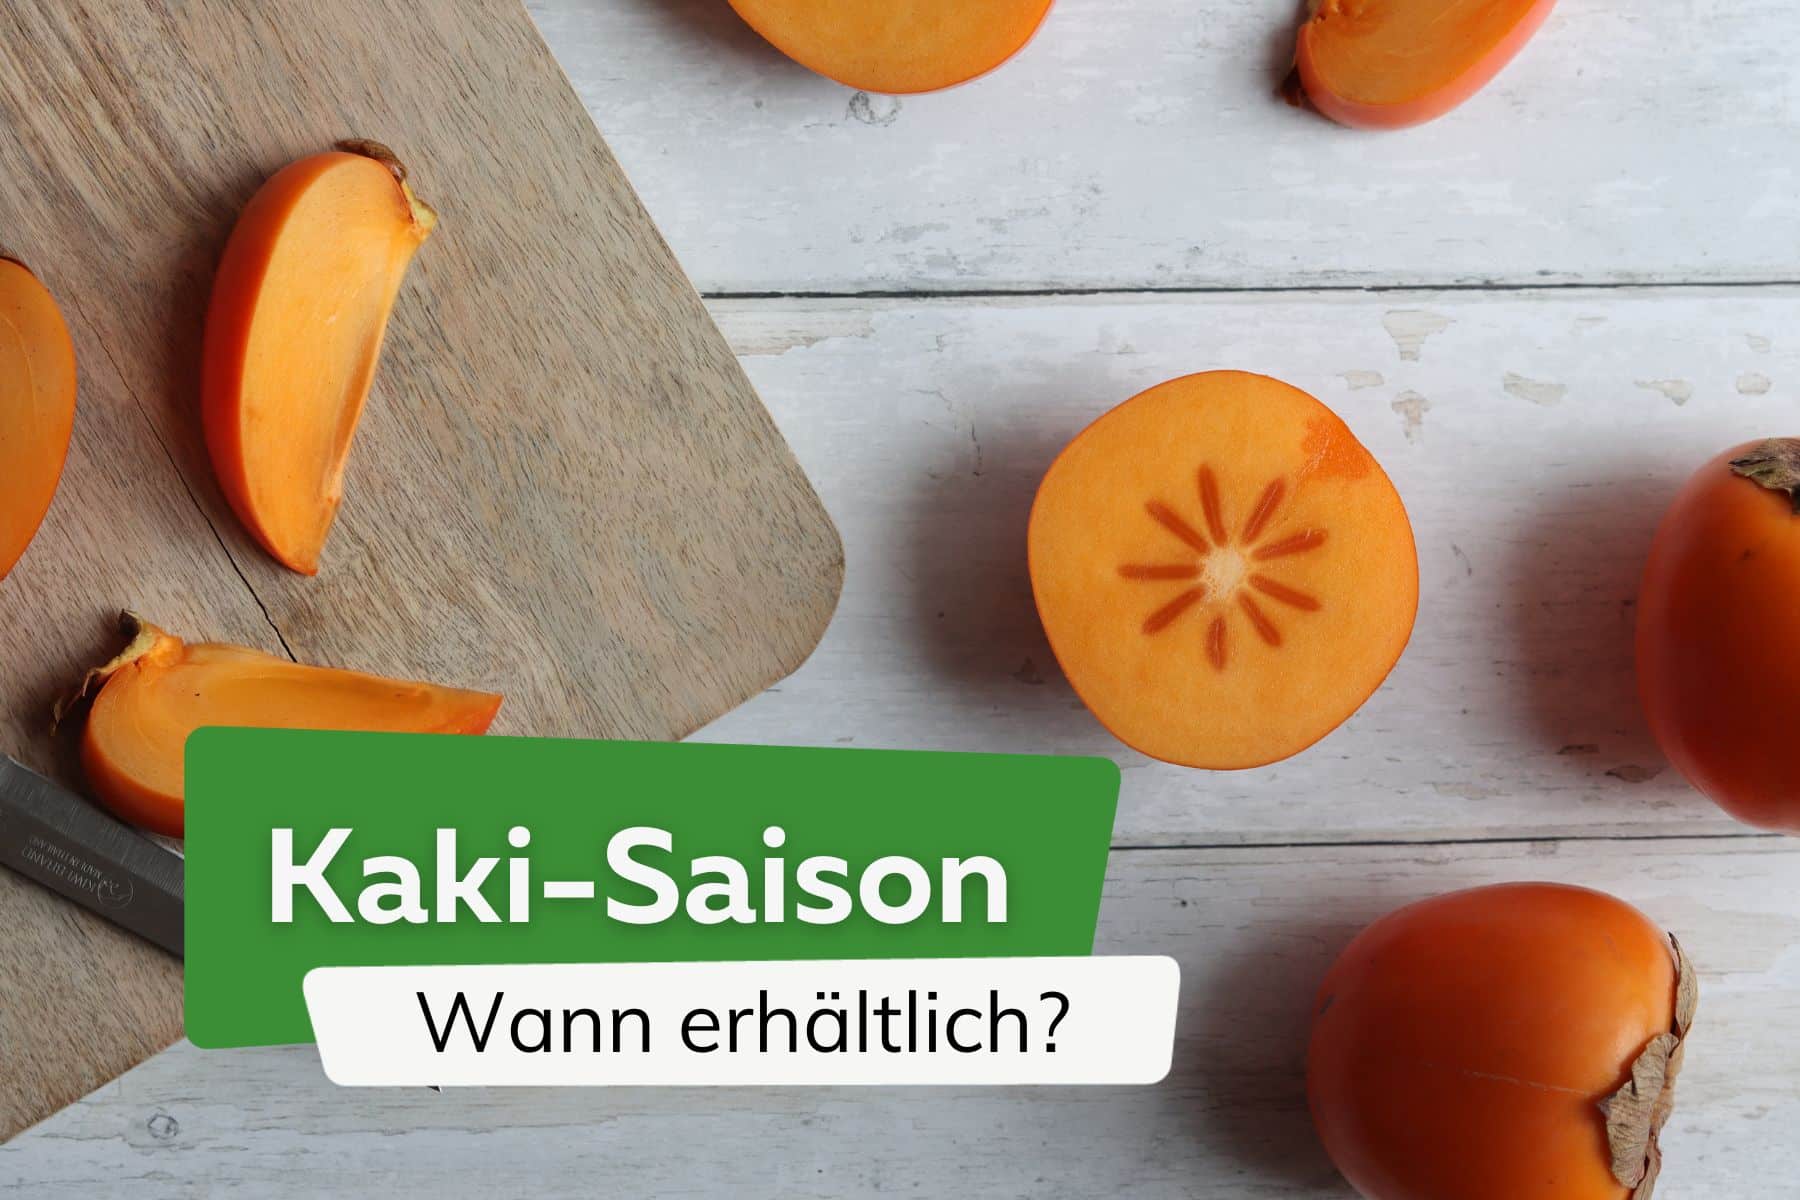 Kaki-Saison: wann sind die Früchte erhältlich?